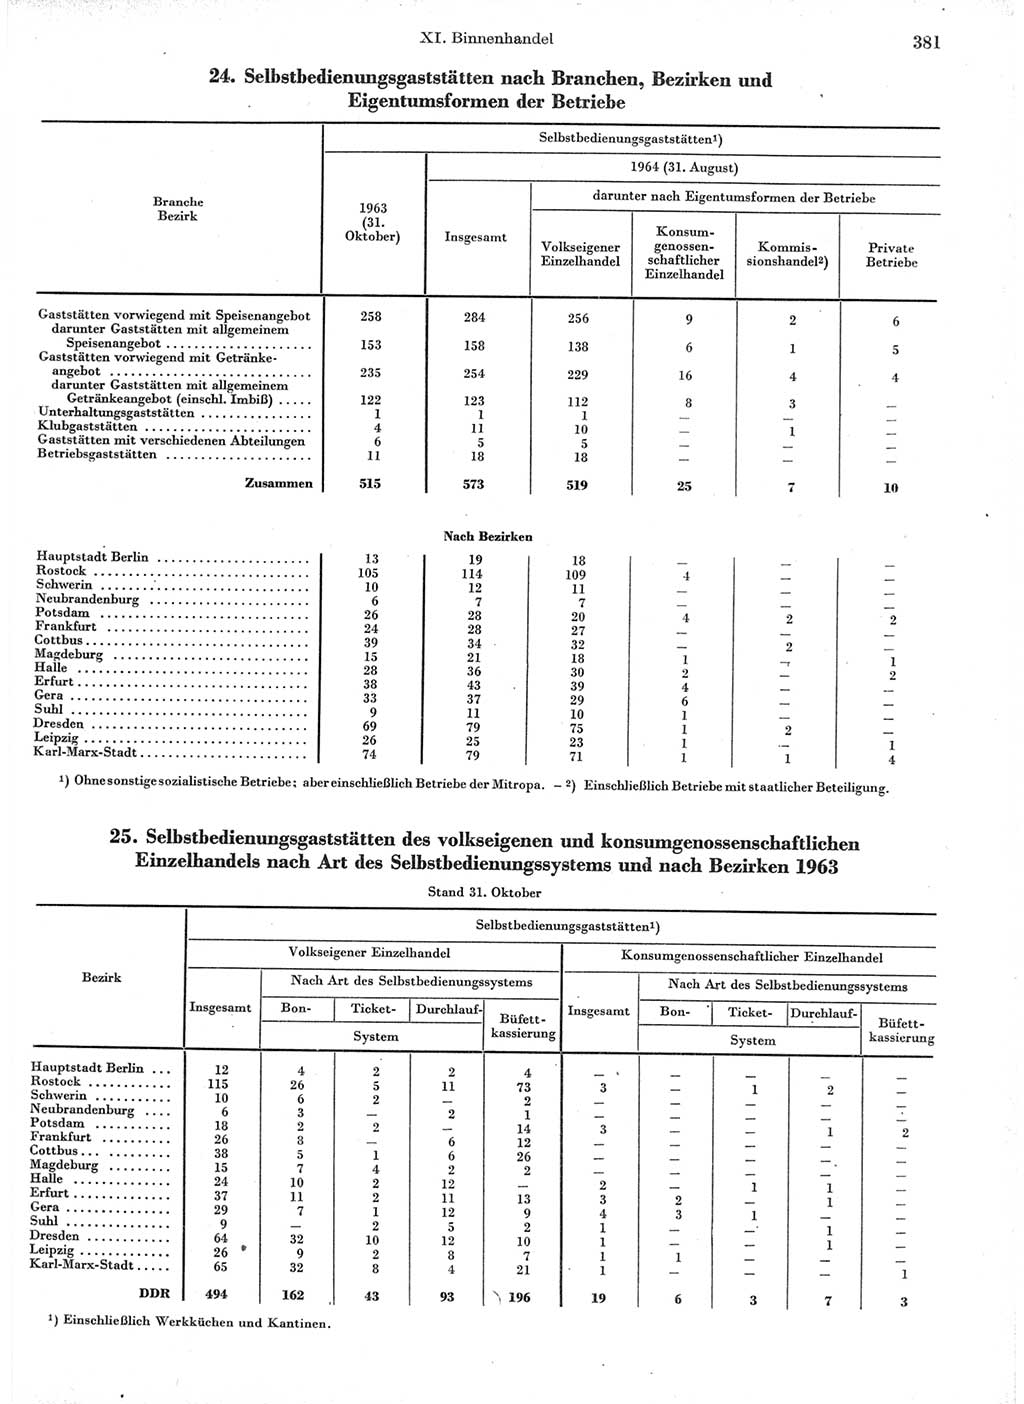 Statistisches Jahrbuch der Deutschen Demokratischen Republik (DDR) 1966, Seite 381 (Stat. Jb. DDR 1966, S. 381)